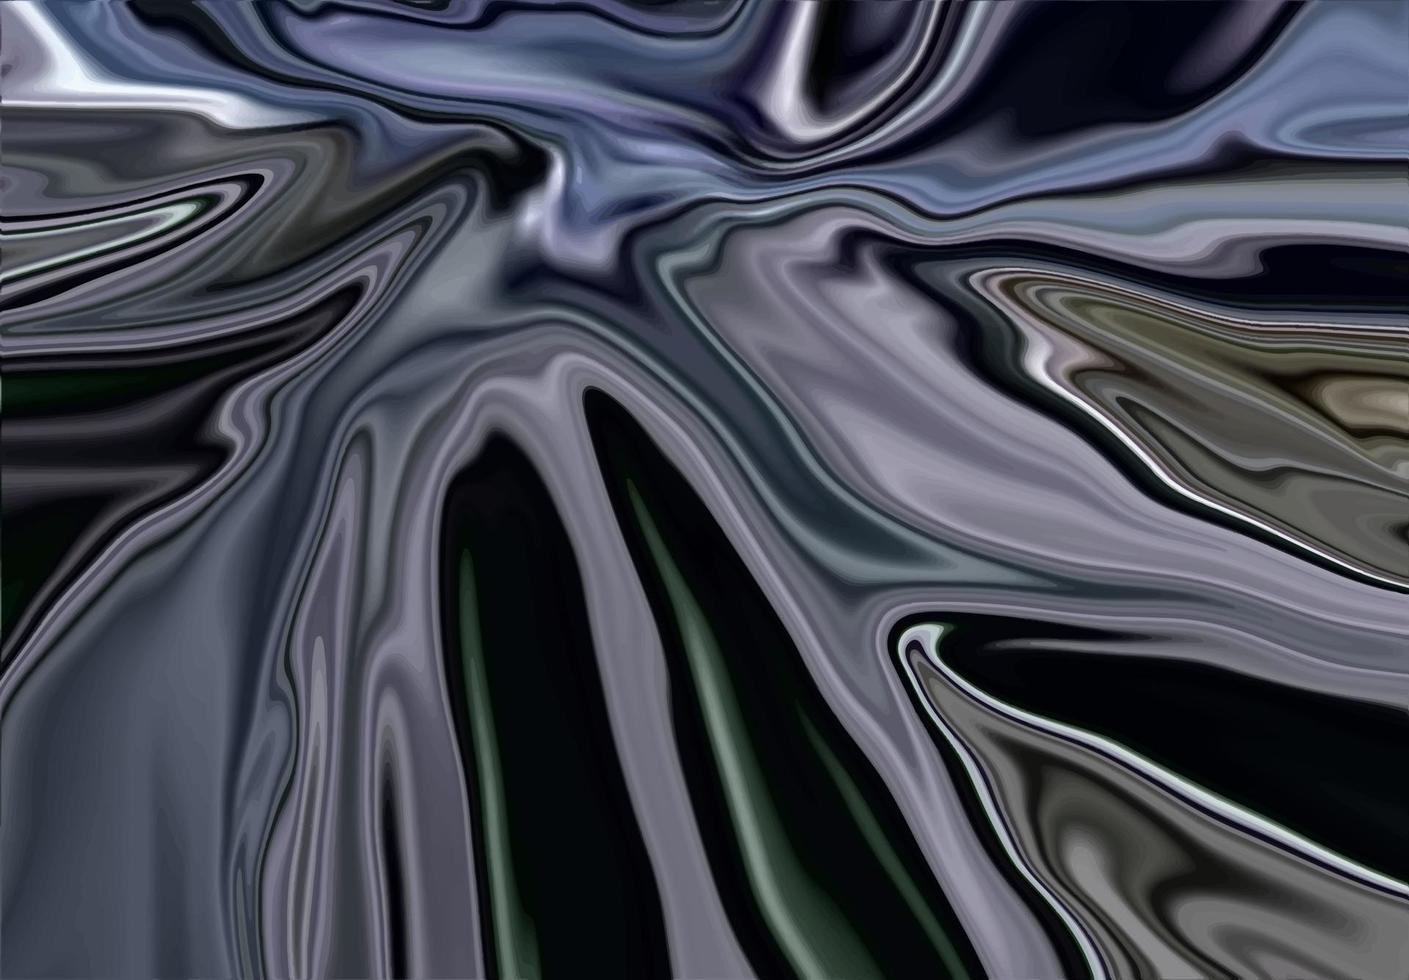 diseño de fondo líquido de lujo brillante moderno abstracto vector